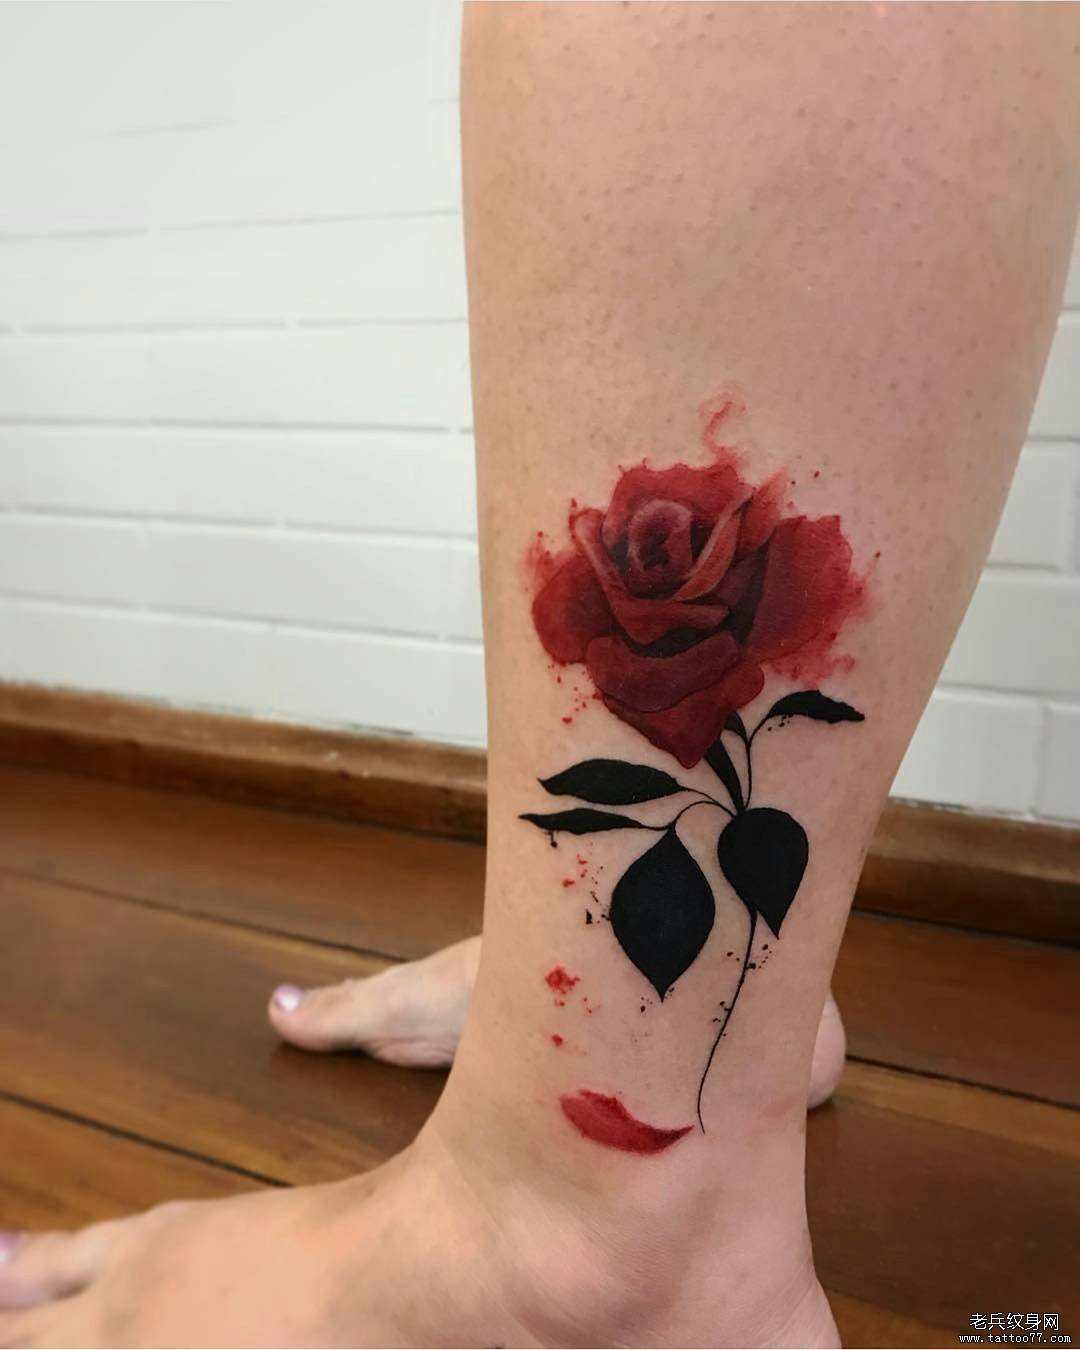 脚踝泼墨漂亮的玫瑰纹身图案